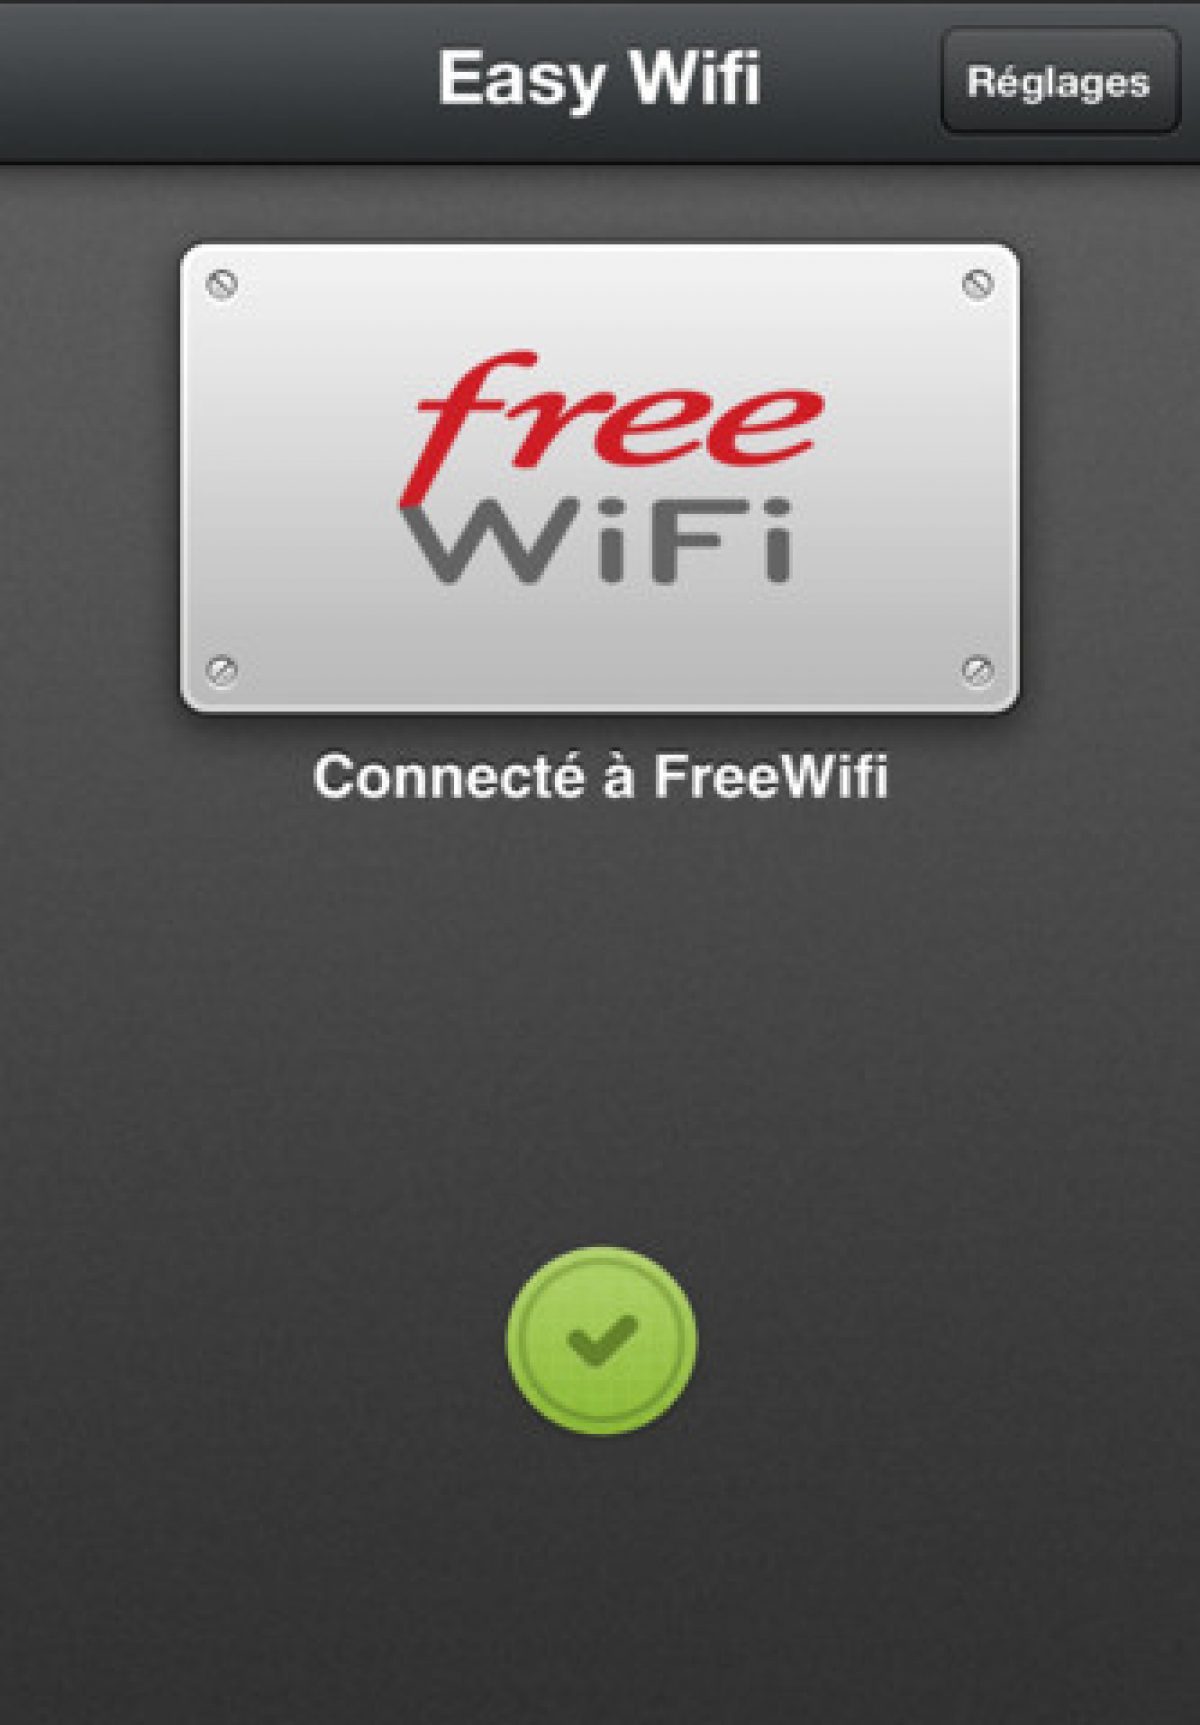 Avec Easy Wifi, connectez-vous automatiquement aux réseaux Free Wifi